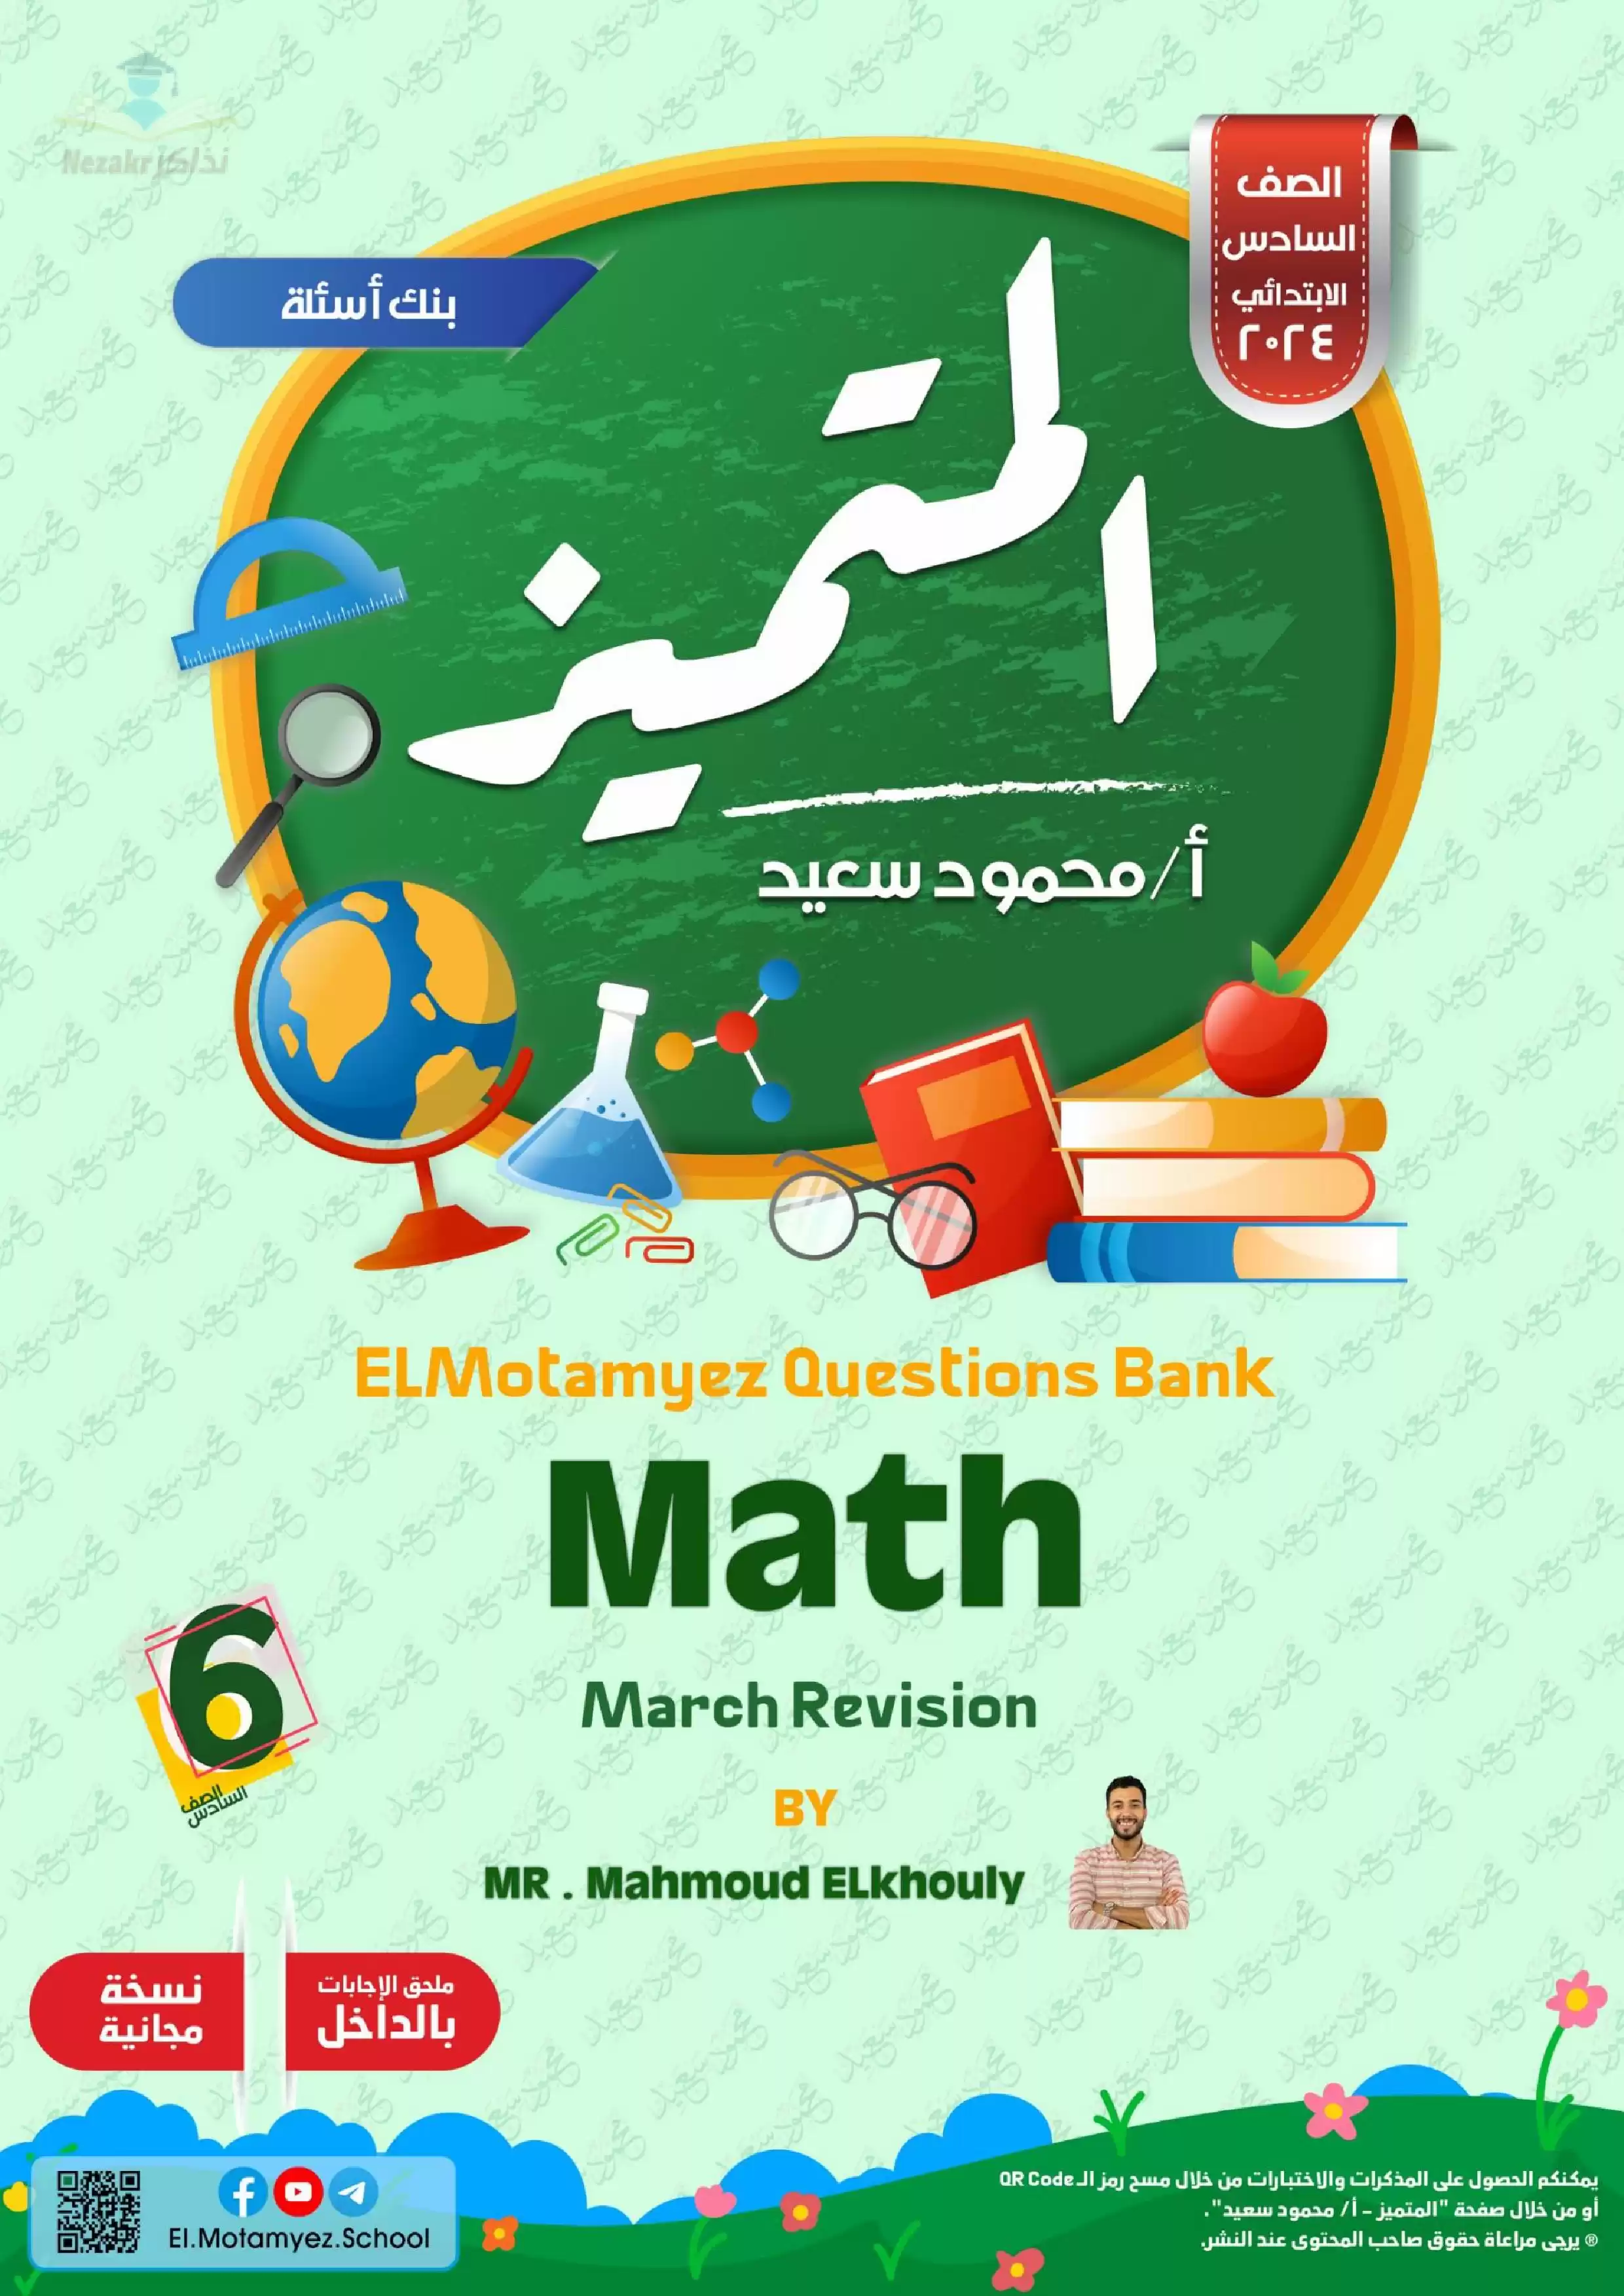 تحميل مراجعة شهر مارس وبنك أسئلة المتميز في مادة الماث Math للصف السادس الابتدائي مع إجاباته النموذجية